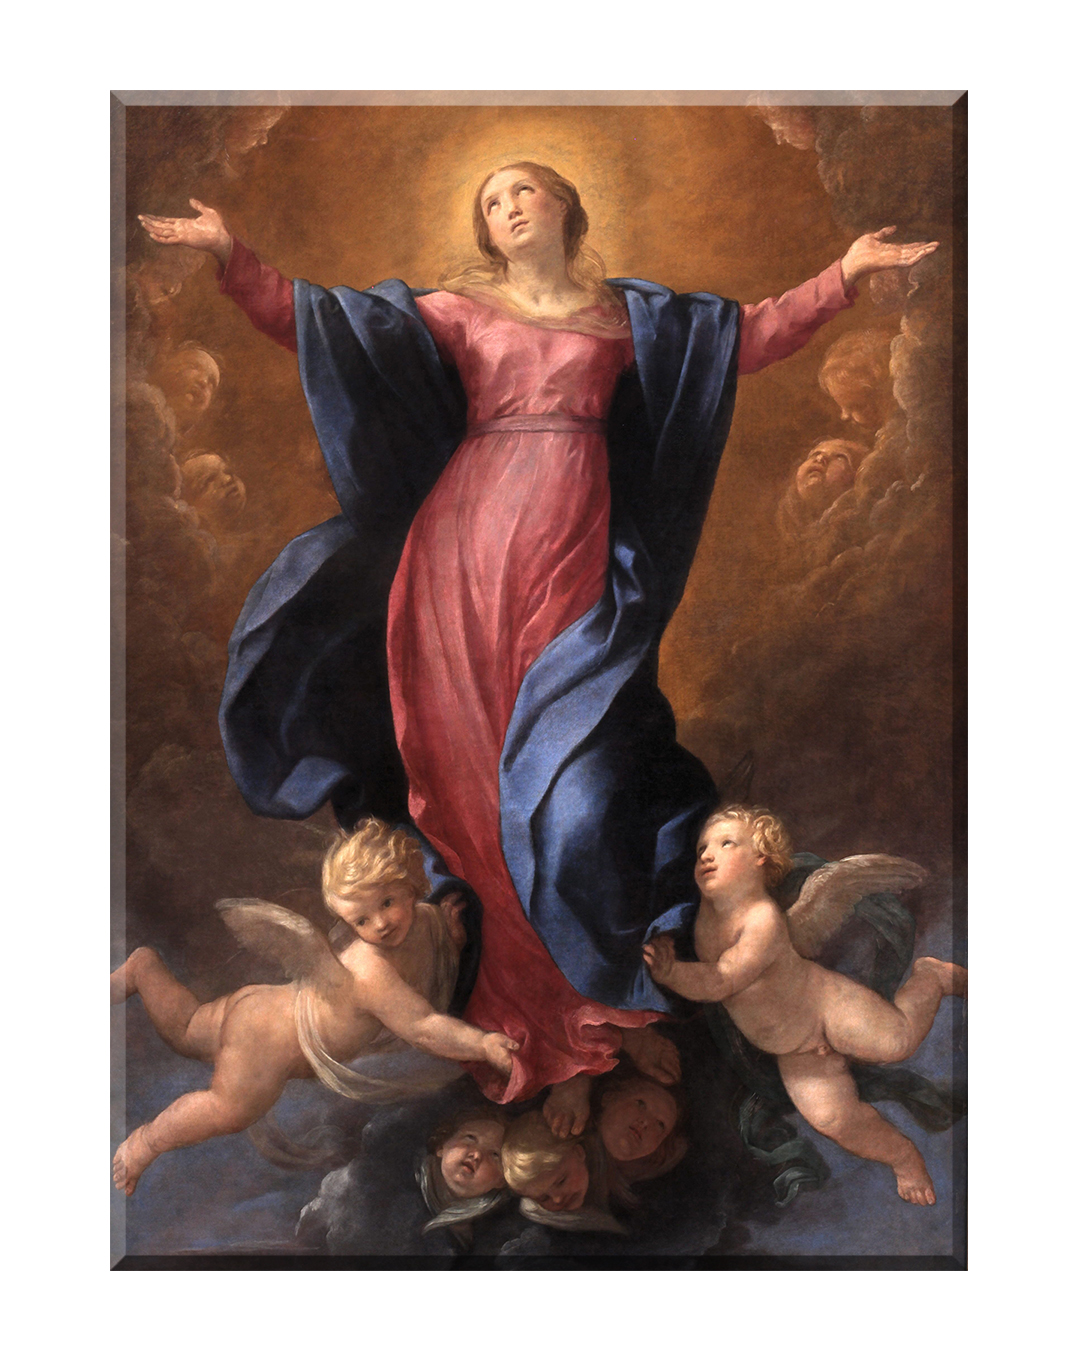 Wniebowzięcie Najświętszej Maryi Panny - 04 - Obraz biblijny